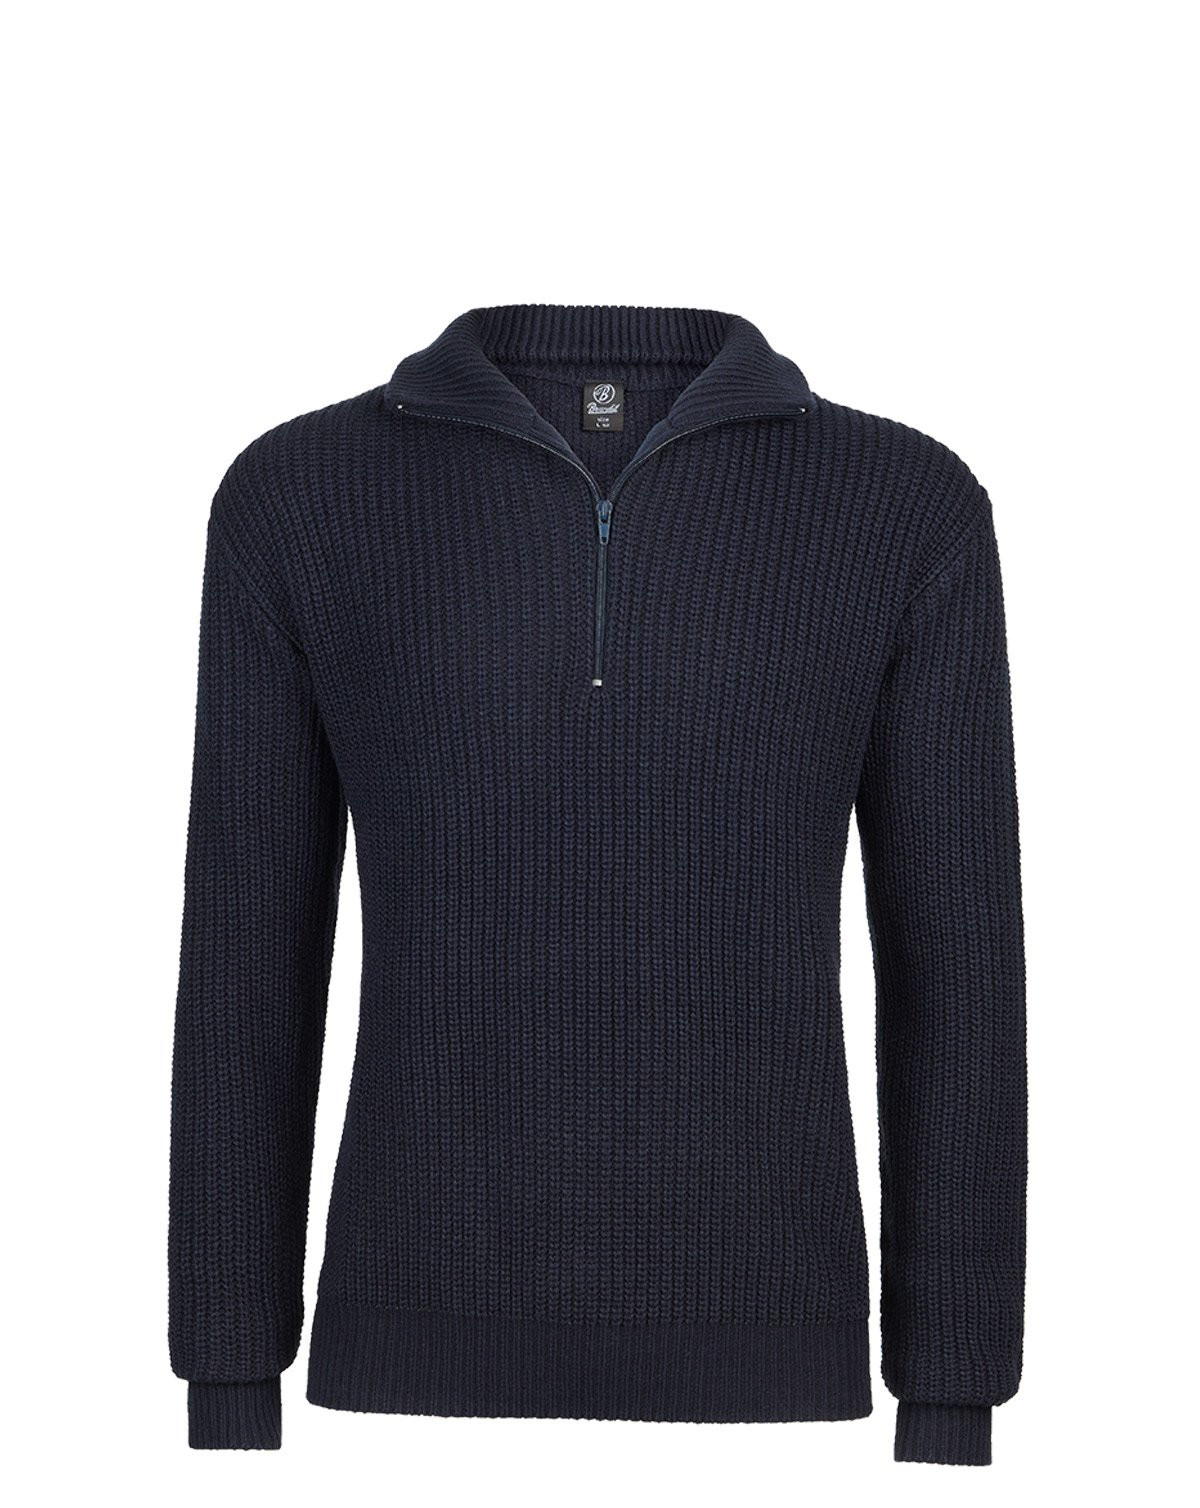 Brandit Marine Pullover Troyer Sweater (Navy, 3XL)